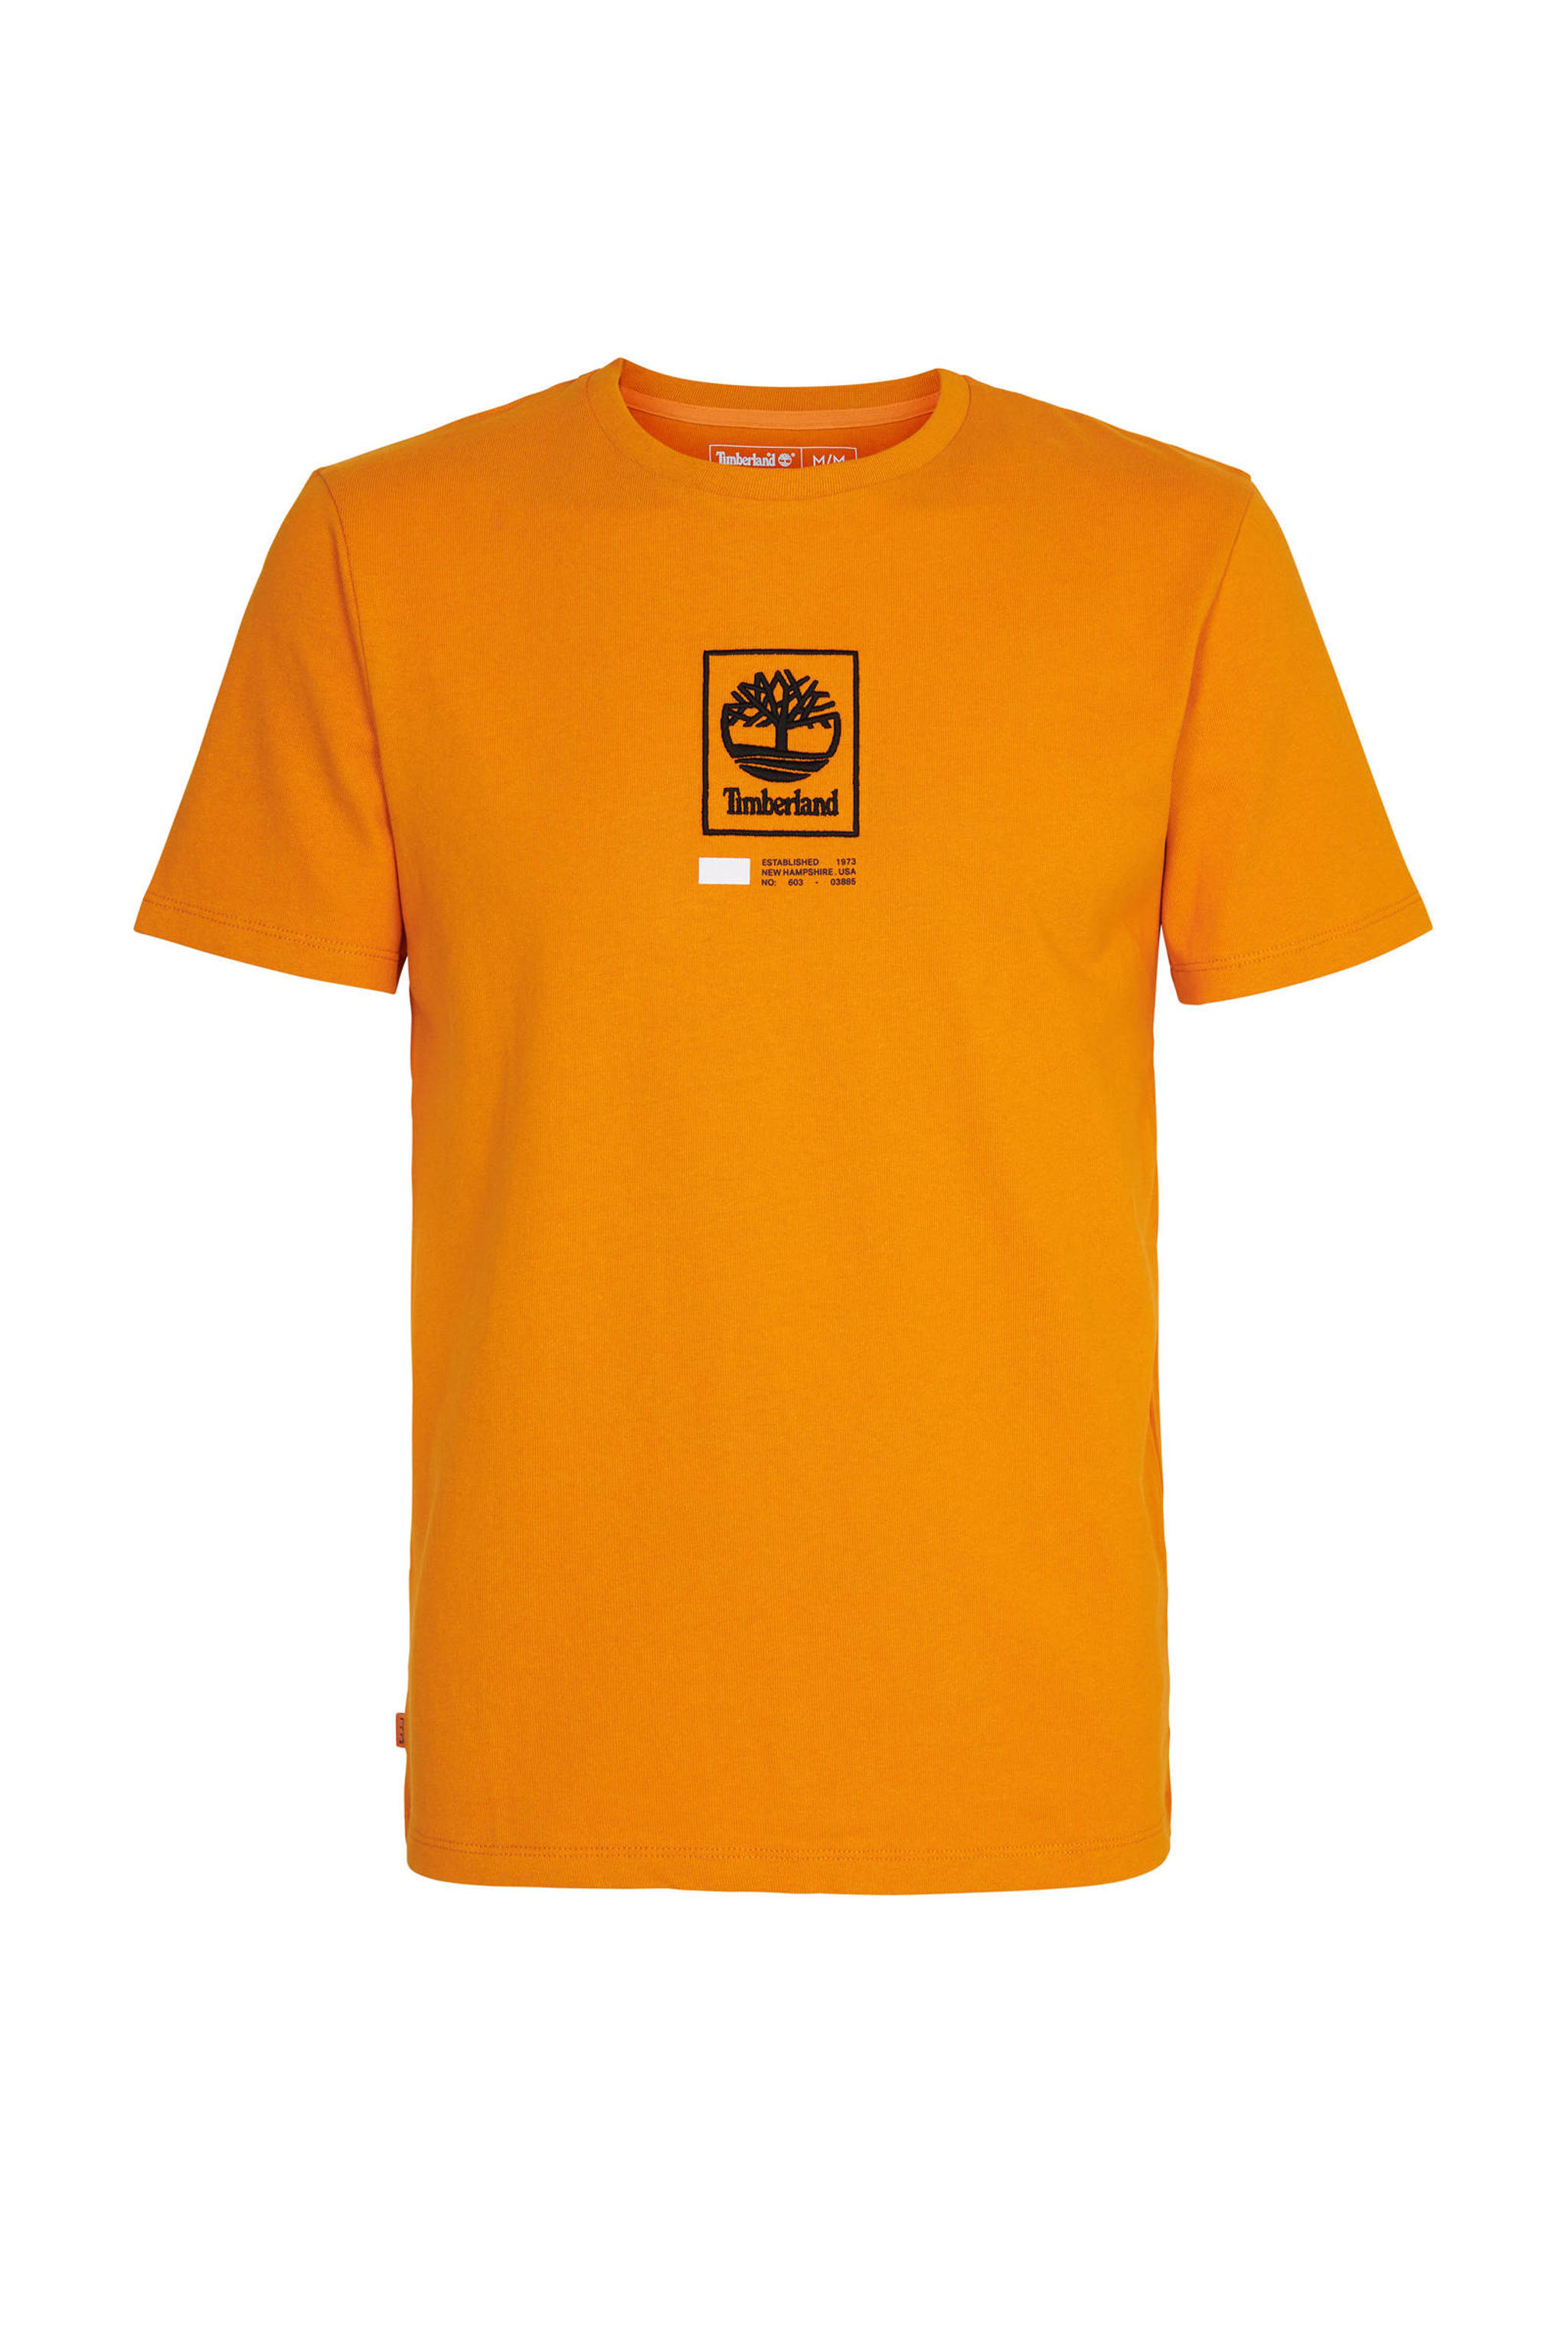 Timberland T Shirt Met Logo Oranje Zwart Wit Wehkamp